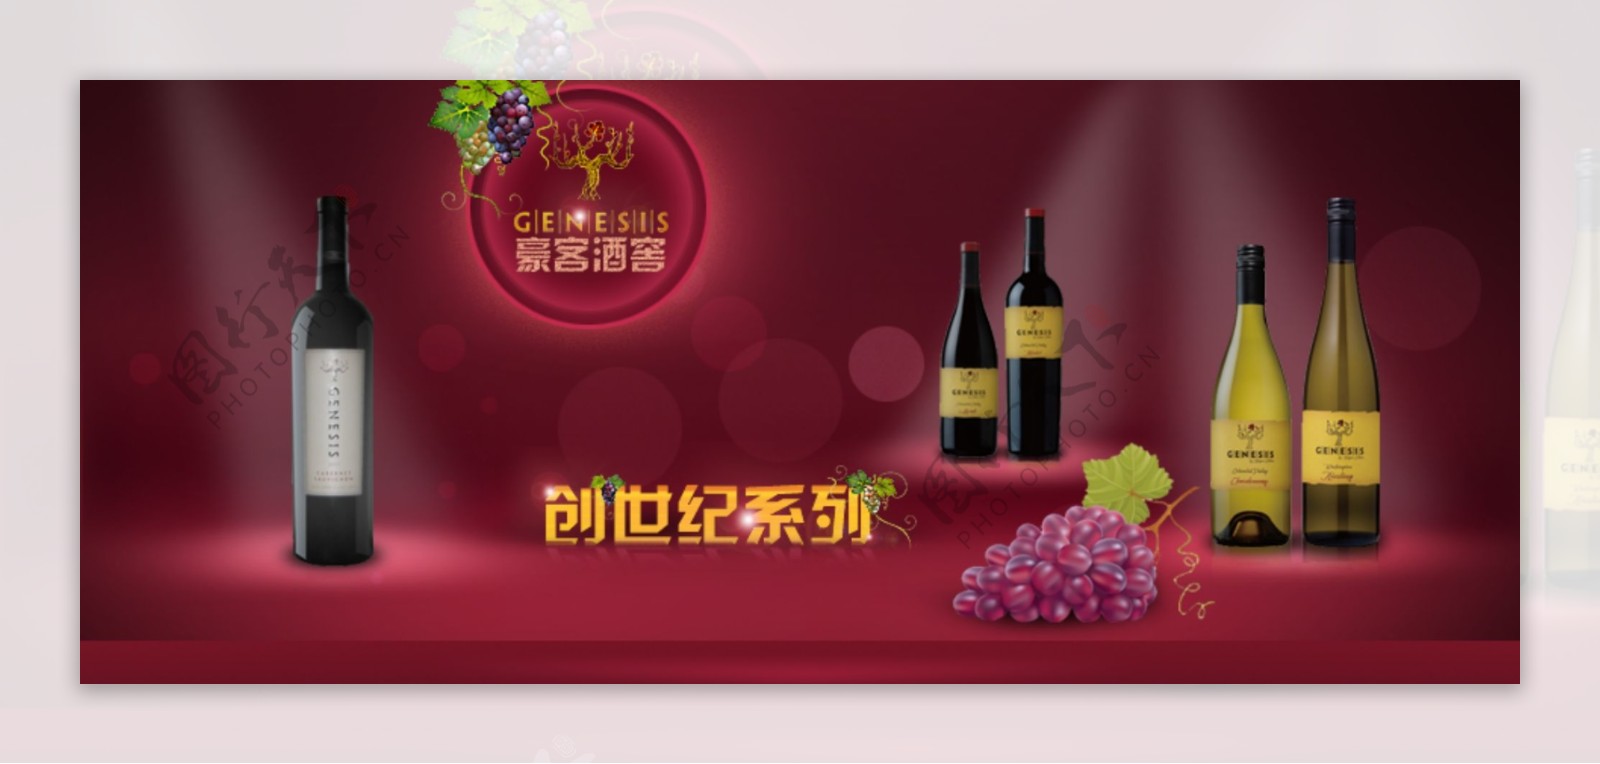 浪漫红酒葡萄酒展示广告图片